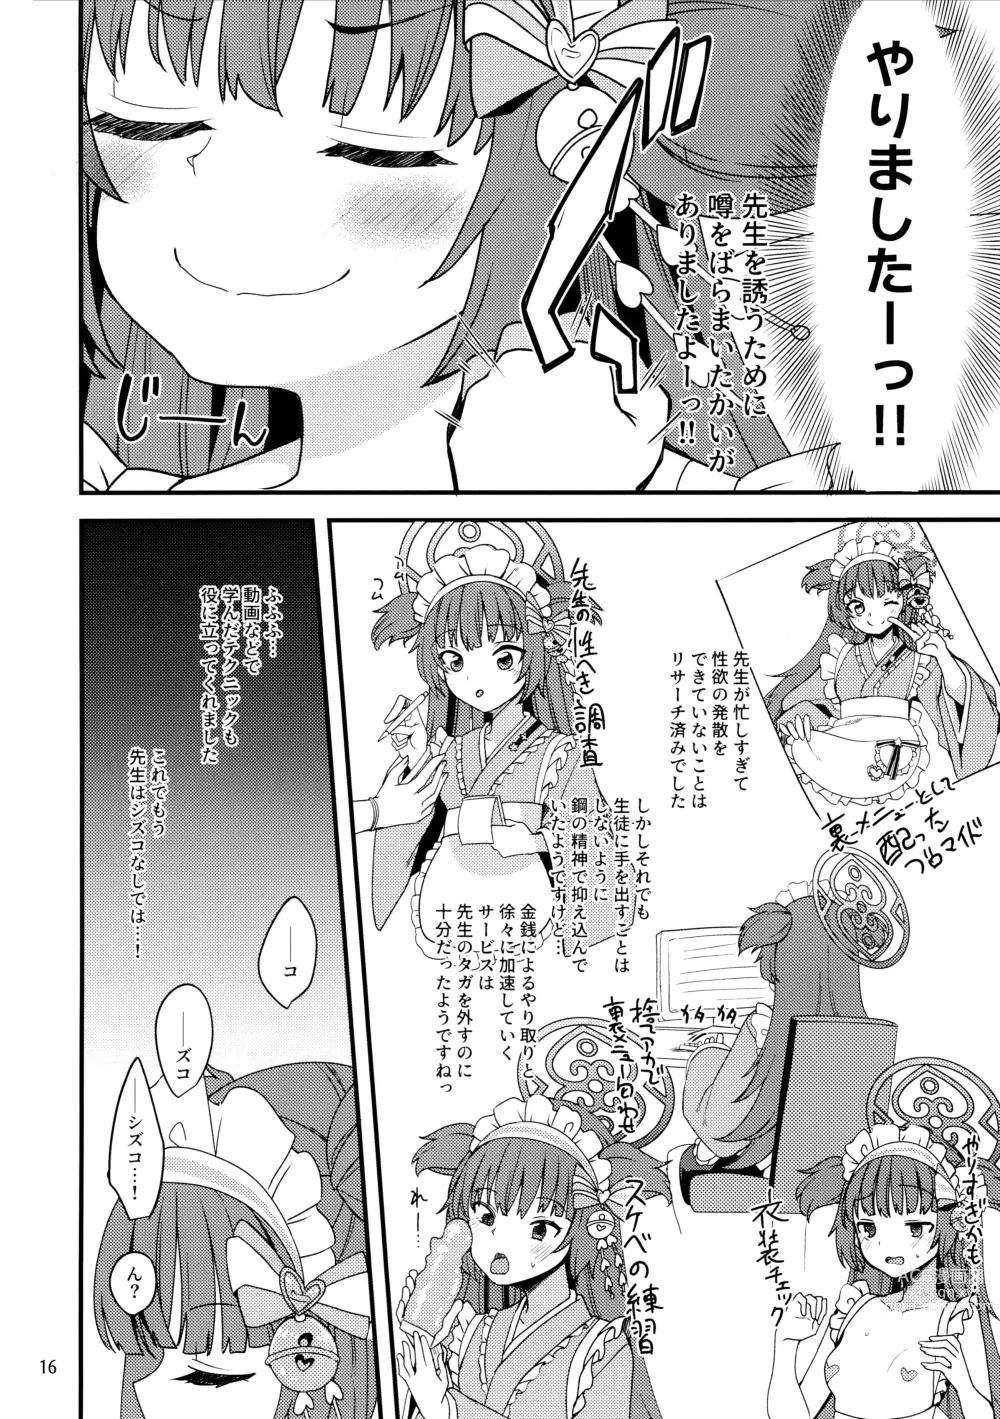 Page 15 of doujinshi Momoyo-dou ni wa Ura Menu ga Aru.